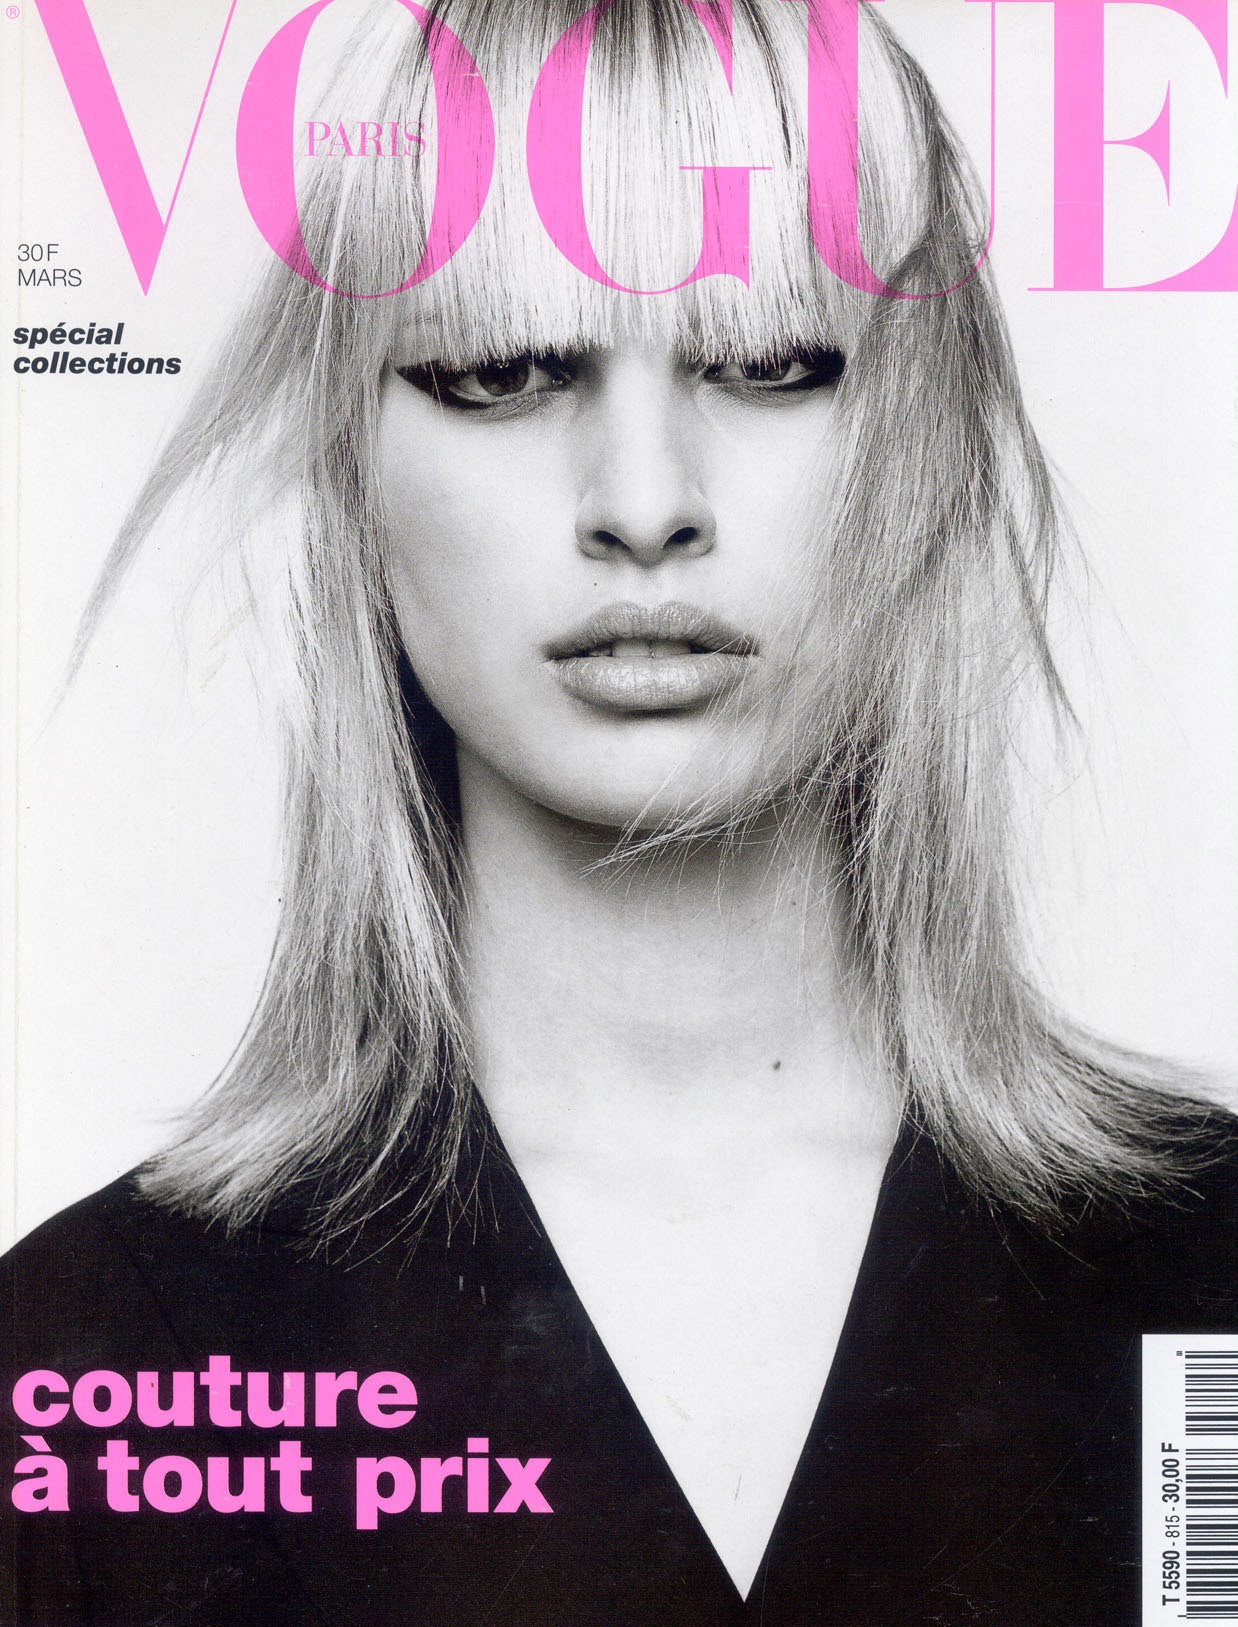 Обложка журнала Vogue 1990 год